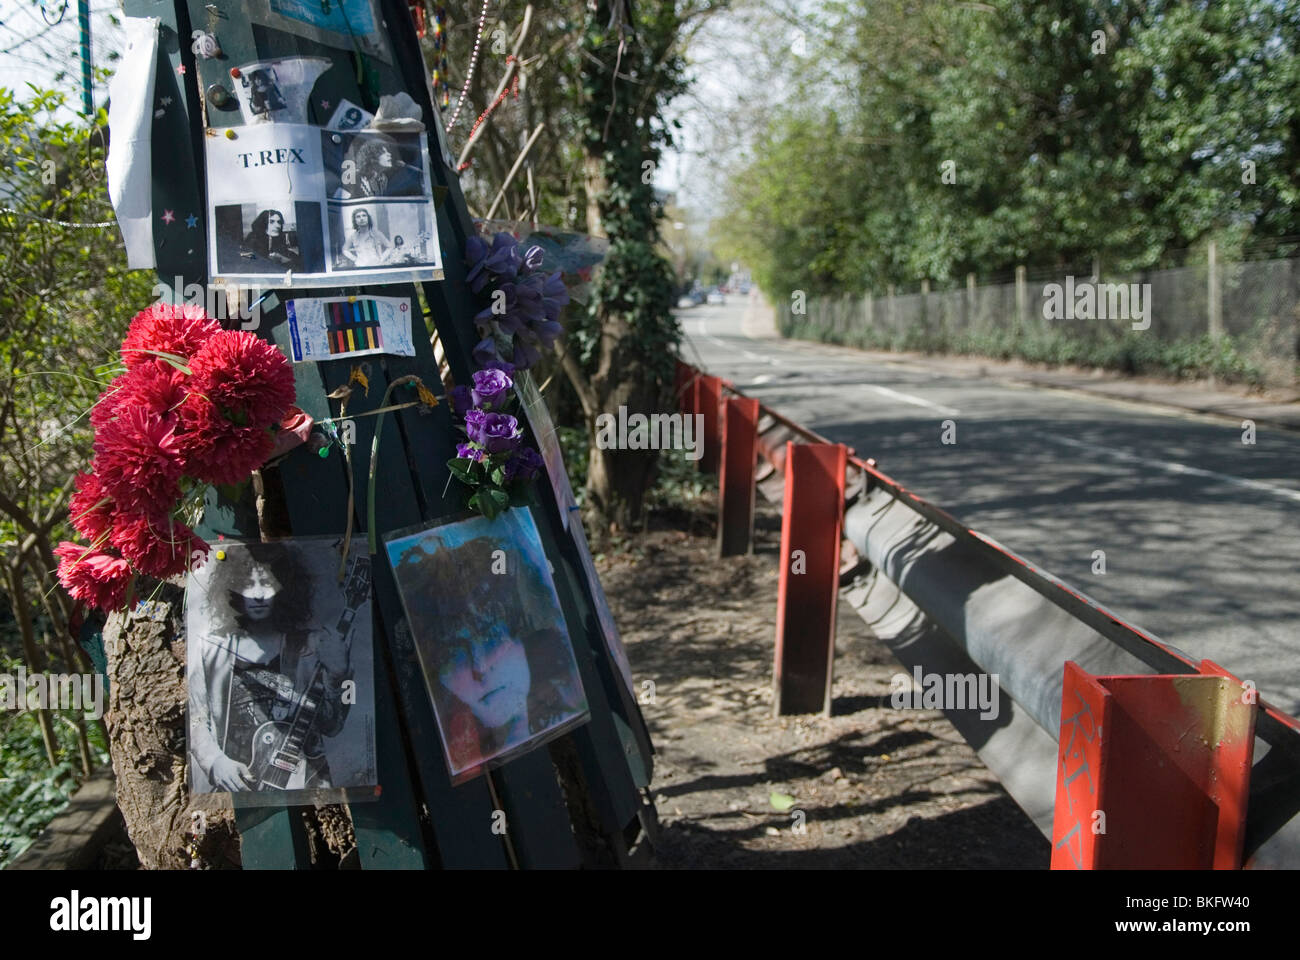 Mémorial Marc Boland des accidents de la route à Barnes London. ROYAUME-UNI. Il est mort dans un accident de voiture à cet endroit en 1977. HOMER SYKES Banque D'Images